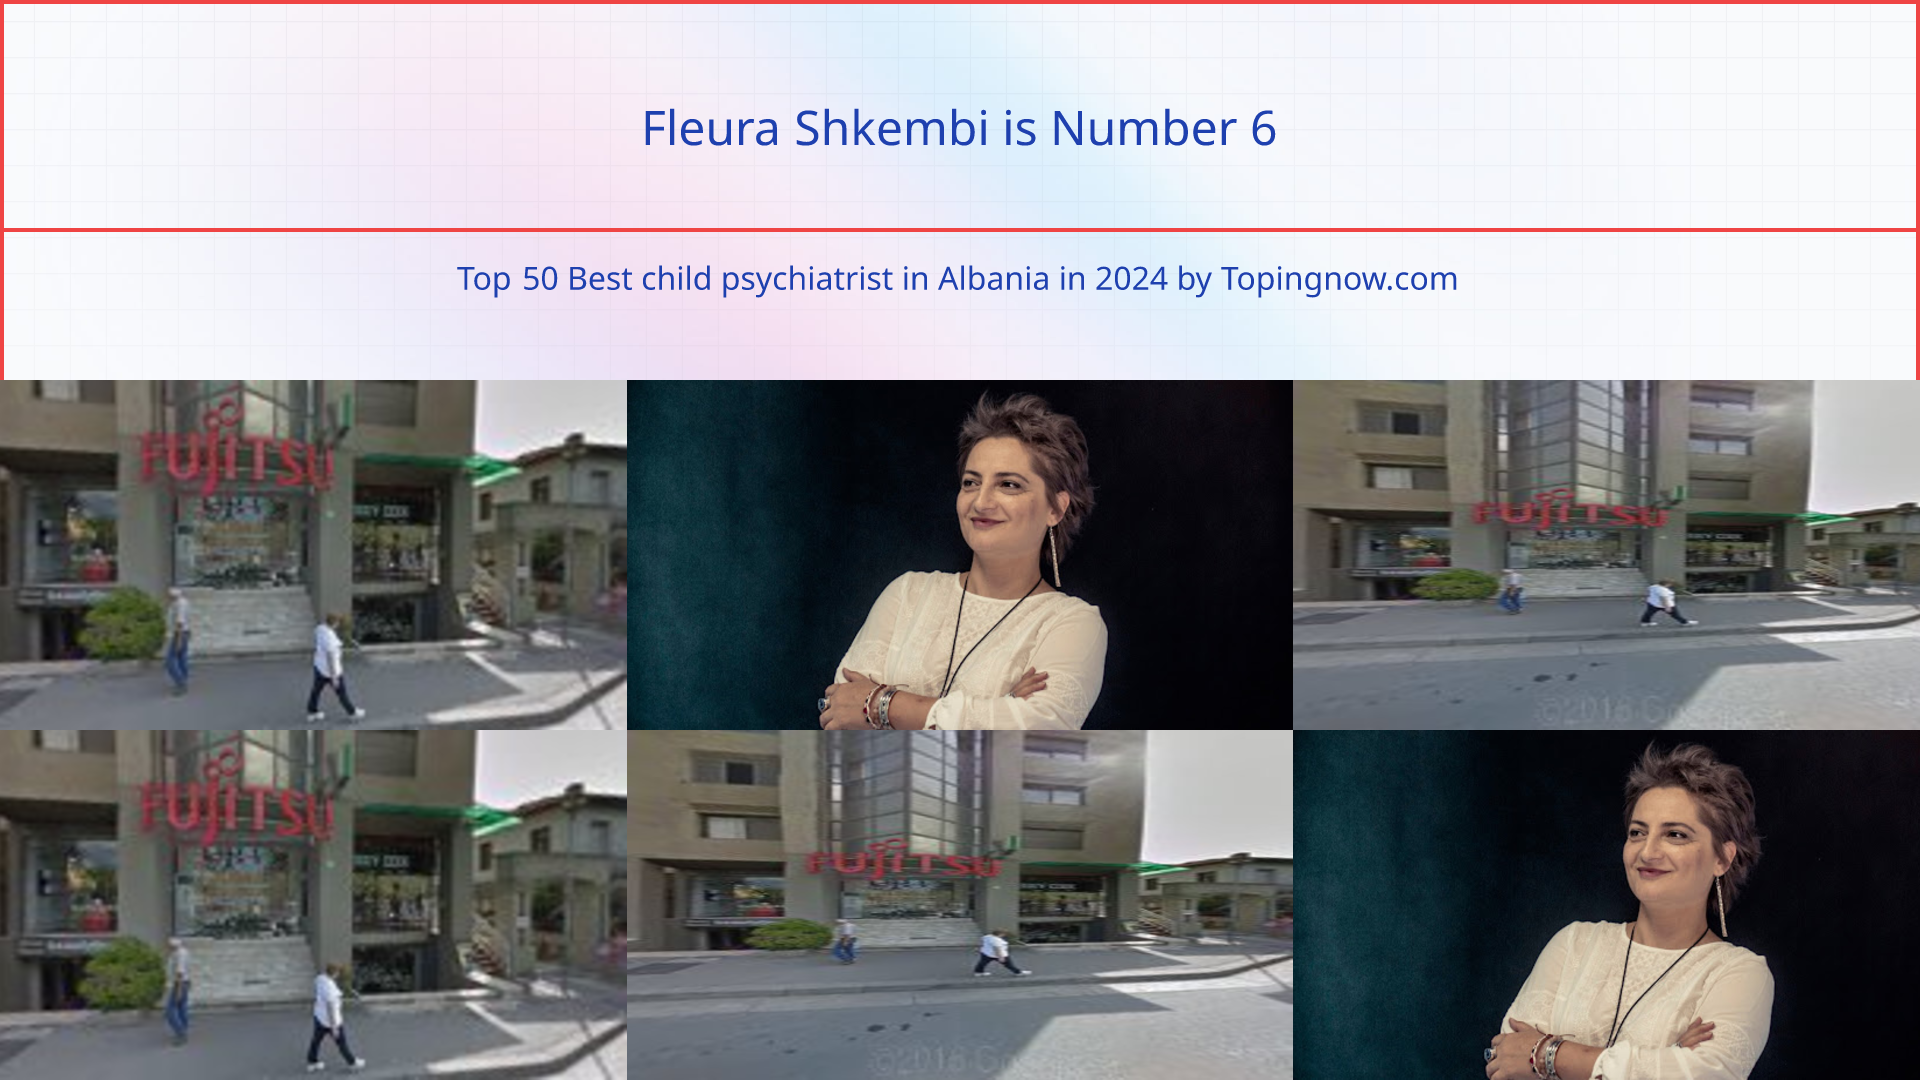 Fleura Shkembi: Top 50 Best child psychiatrist in Albania in 2024